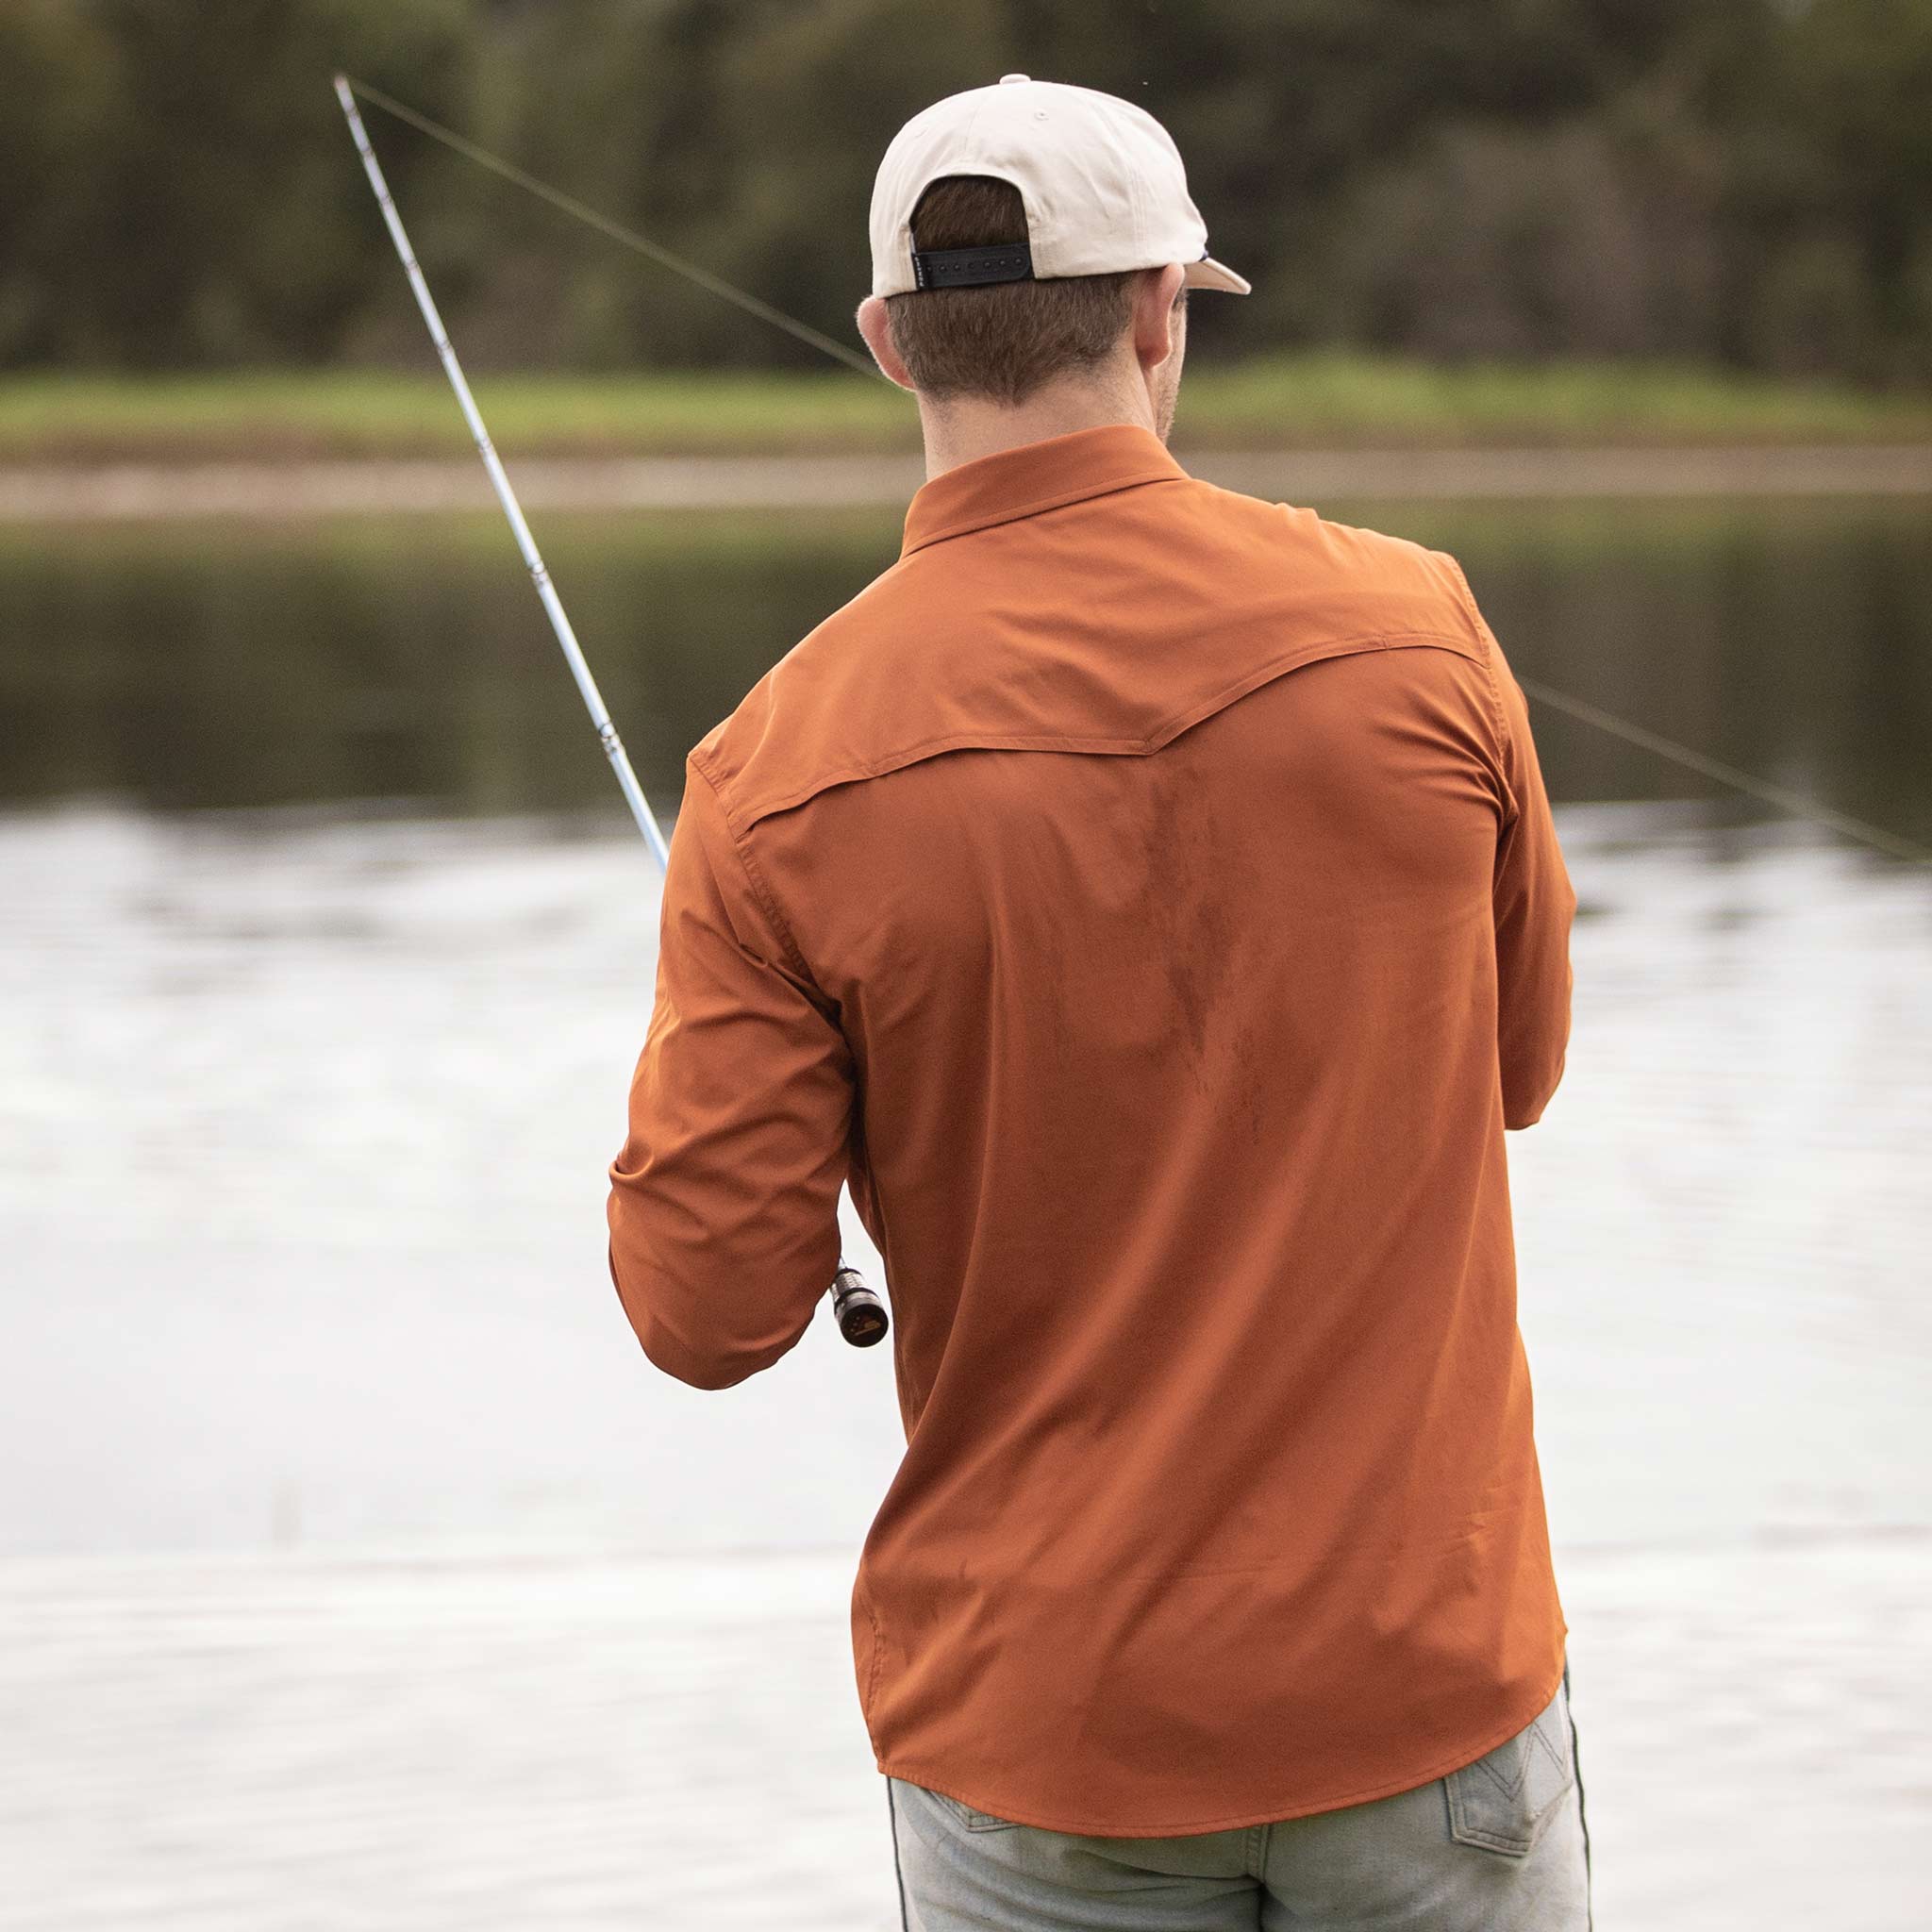 Man facing away from camera fishing while wearing burnt orange long sleeve shirt